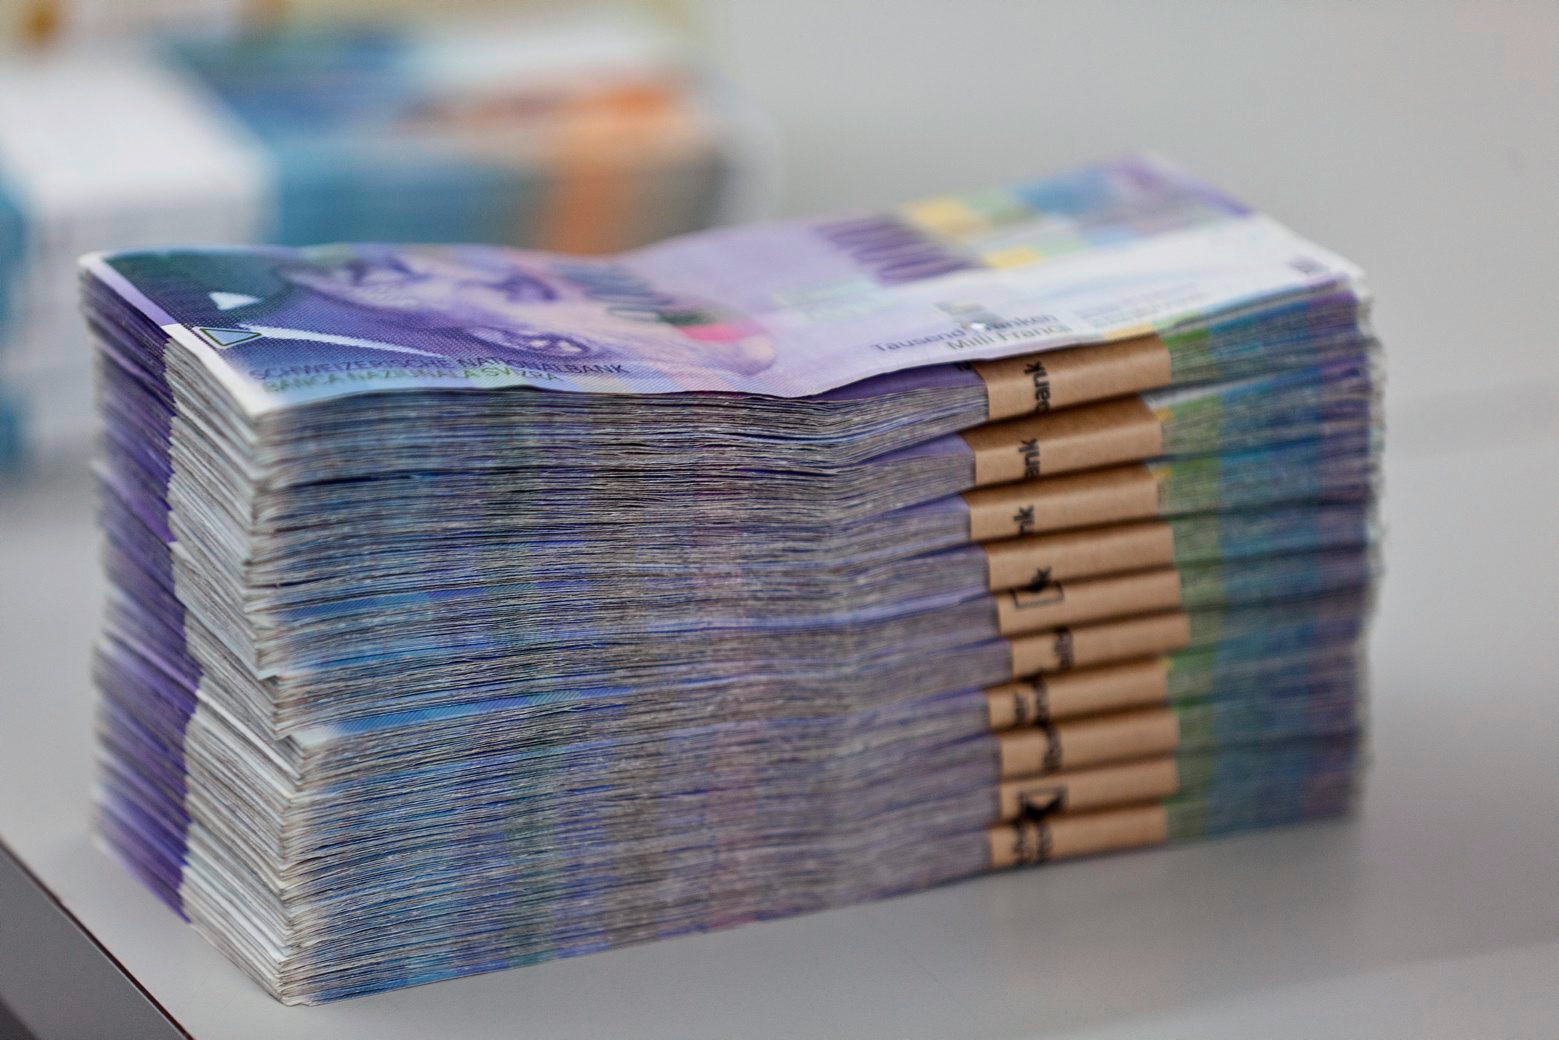 Le notaire a détourné plus de 2 millions de francs dans le cadre de 23 procédures de mise en faillite.